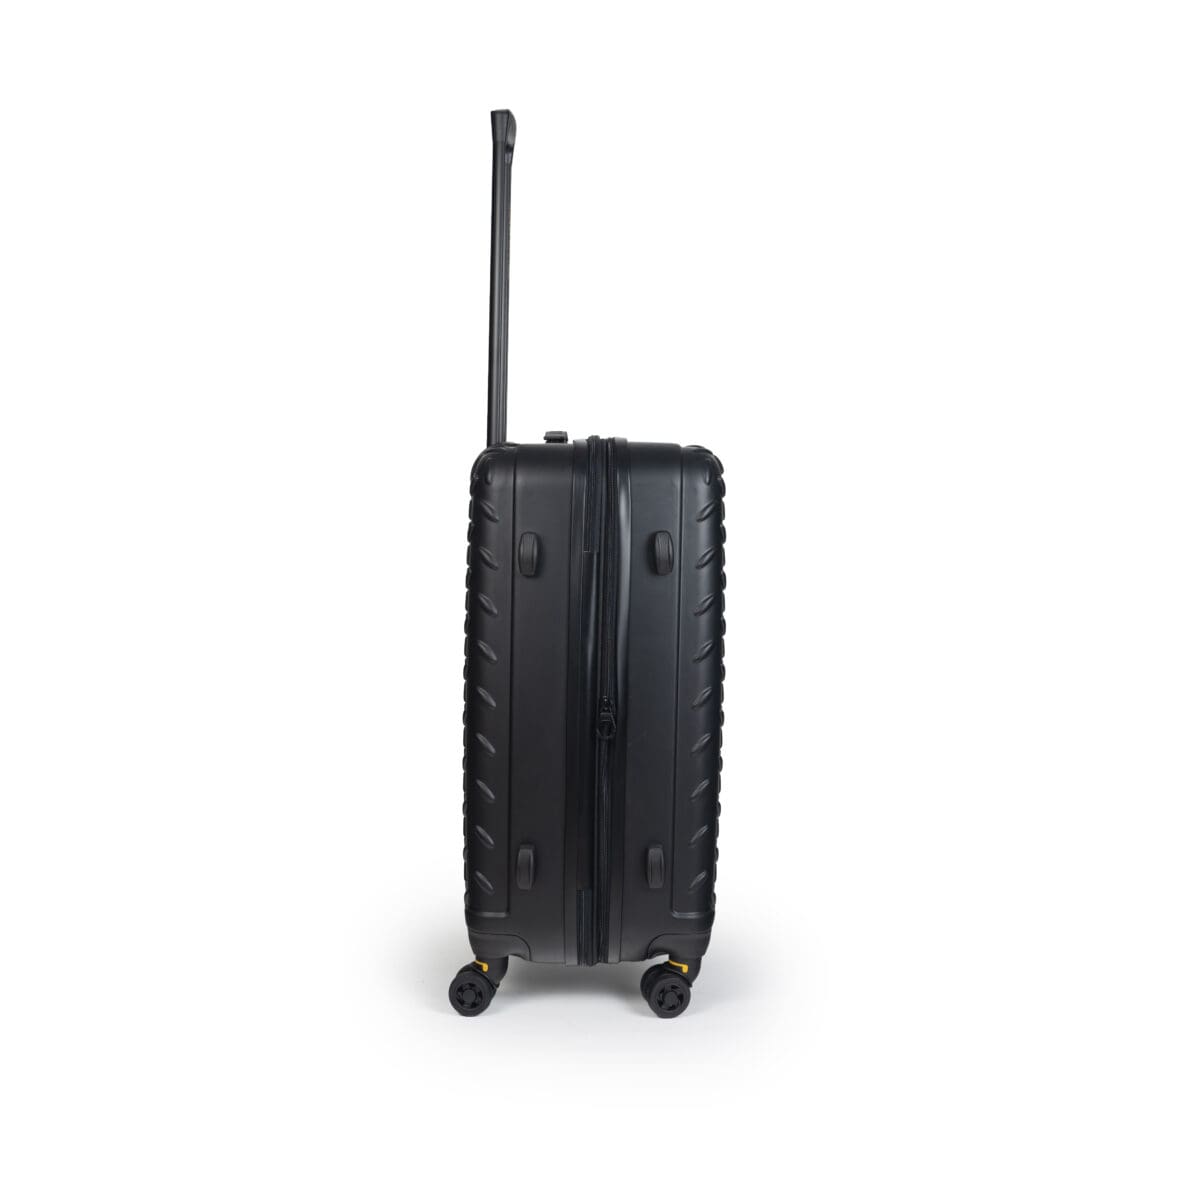 Βαλίτσα με διπλά ροδάκια , tsa lock από abs υλικό σε μαύρο χρώμα , επεκτάσιμη .